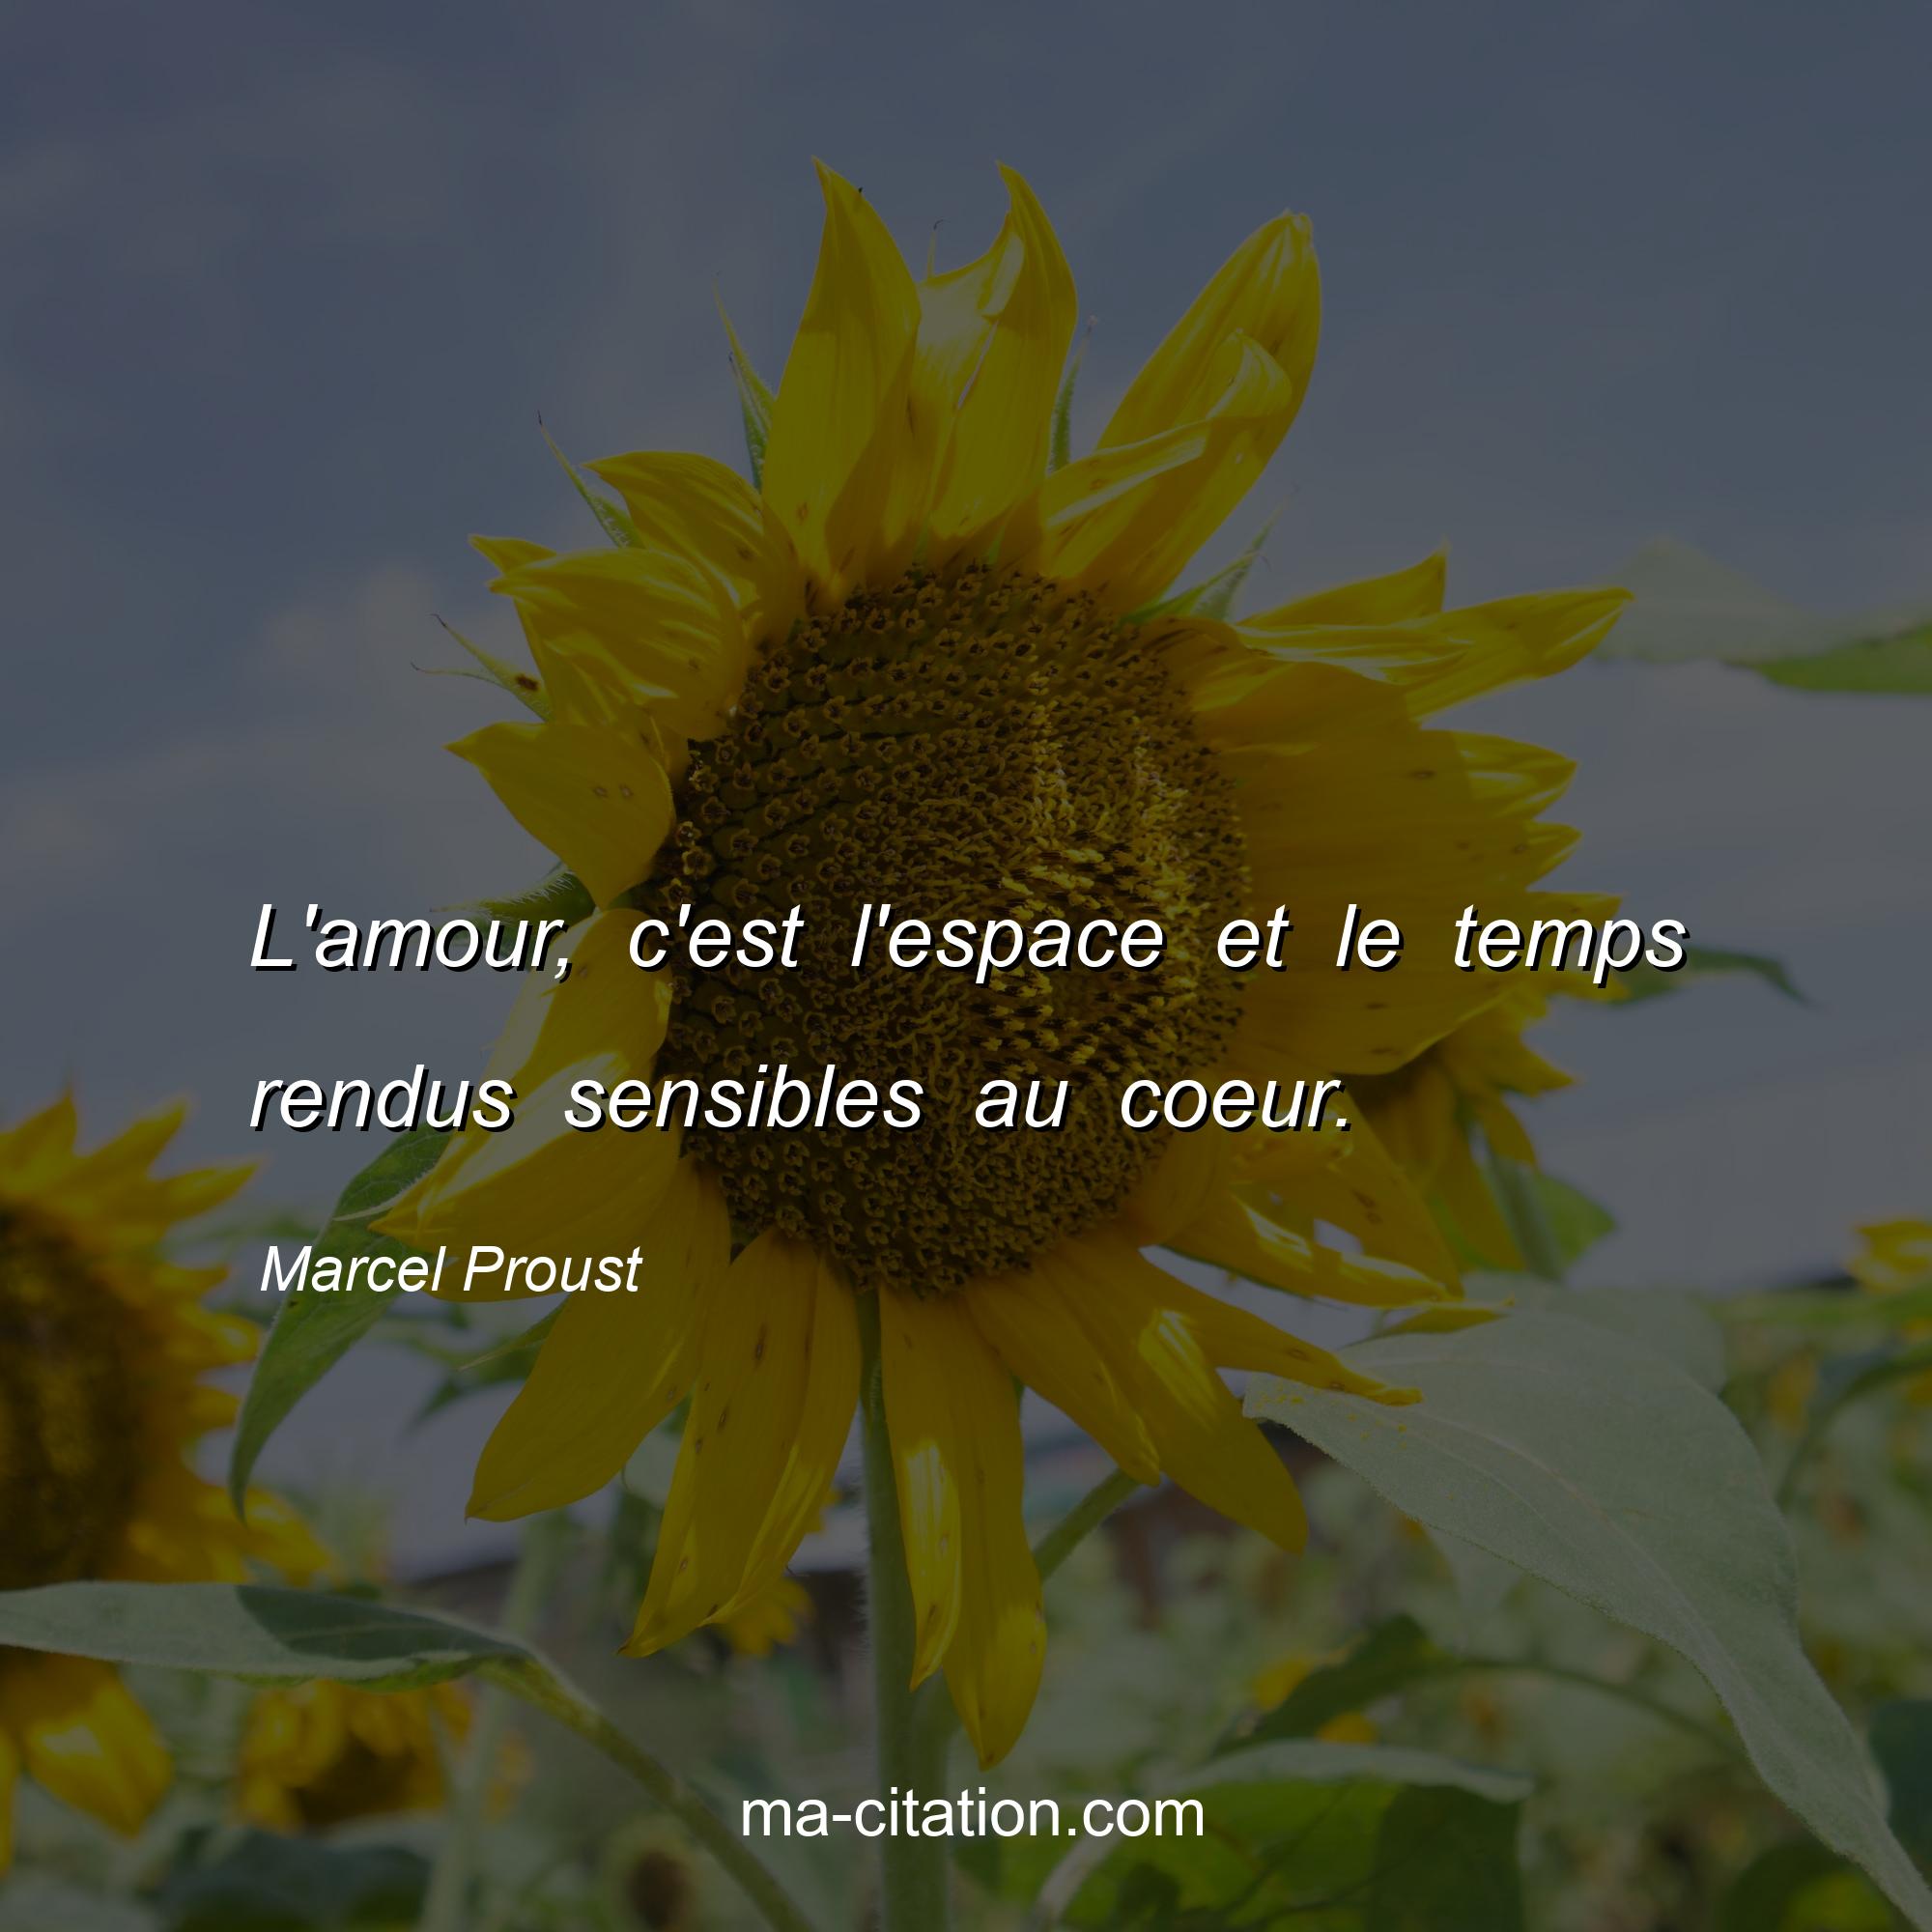 Marcel Proust : L'amour, c'est l'espace et le temps rendus sensibles au coeur.